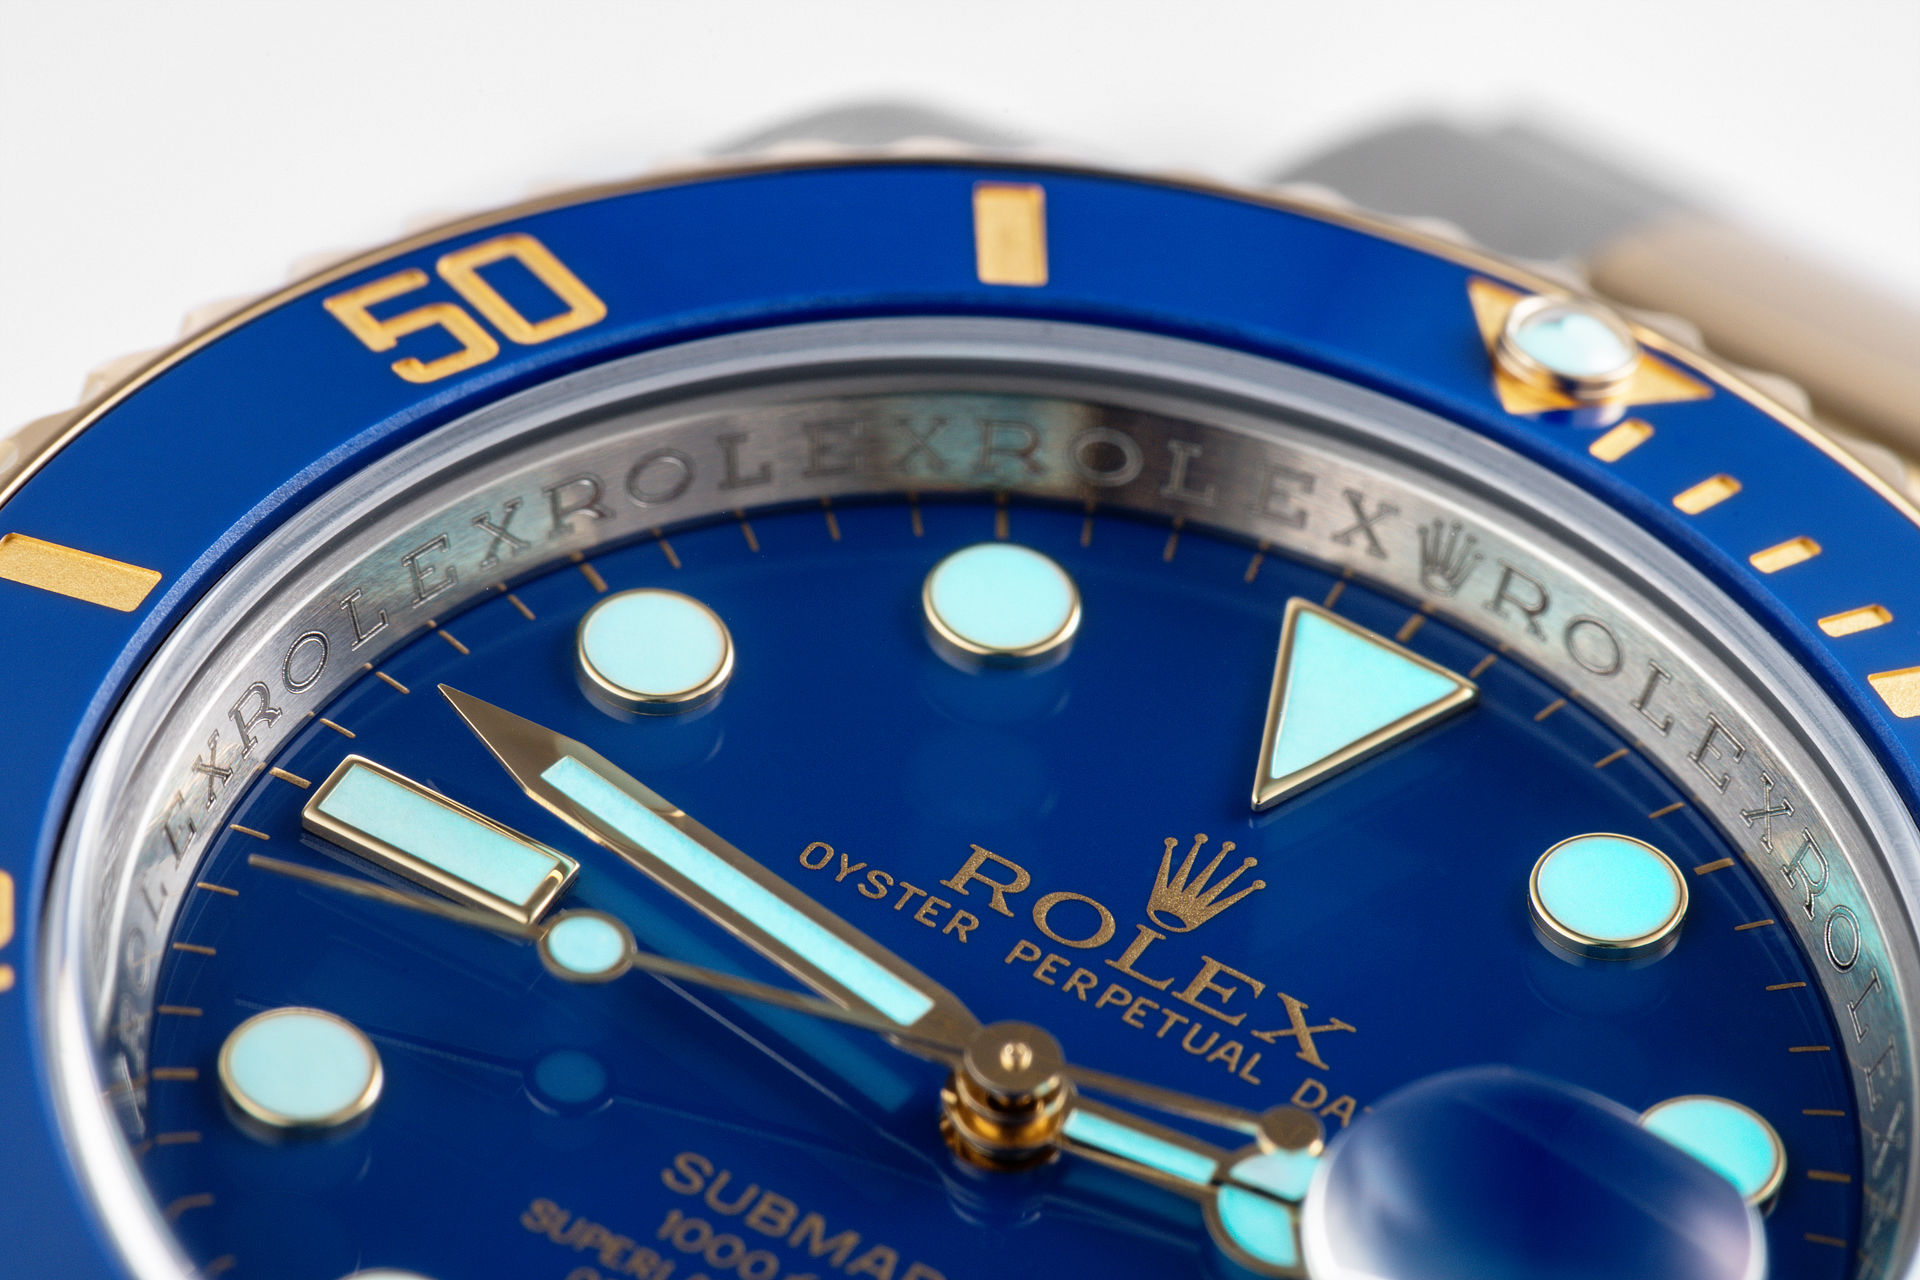 ref 116613LB | Gold & Steel 'Full Set' | Rolex Submariner Date